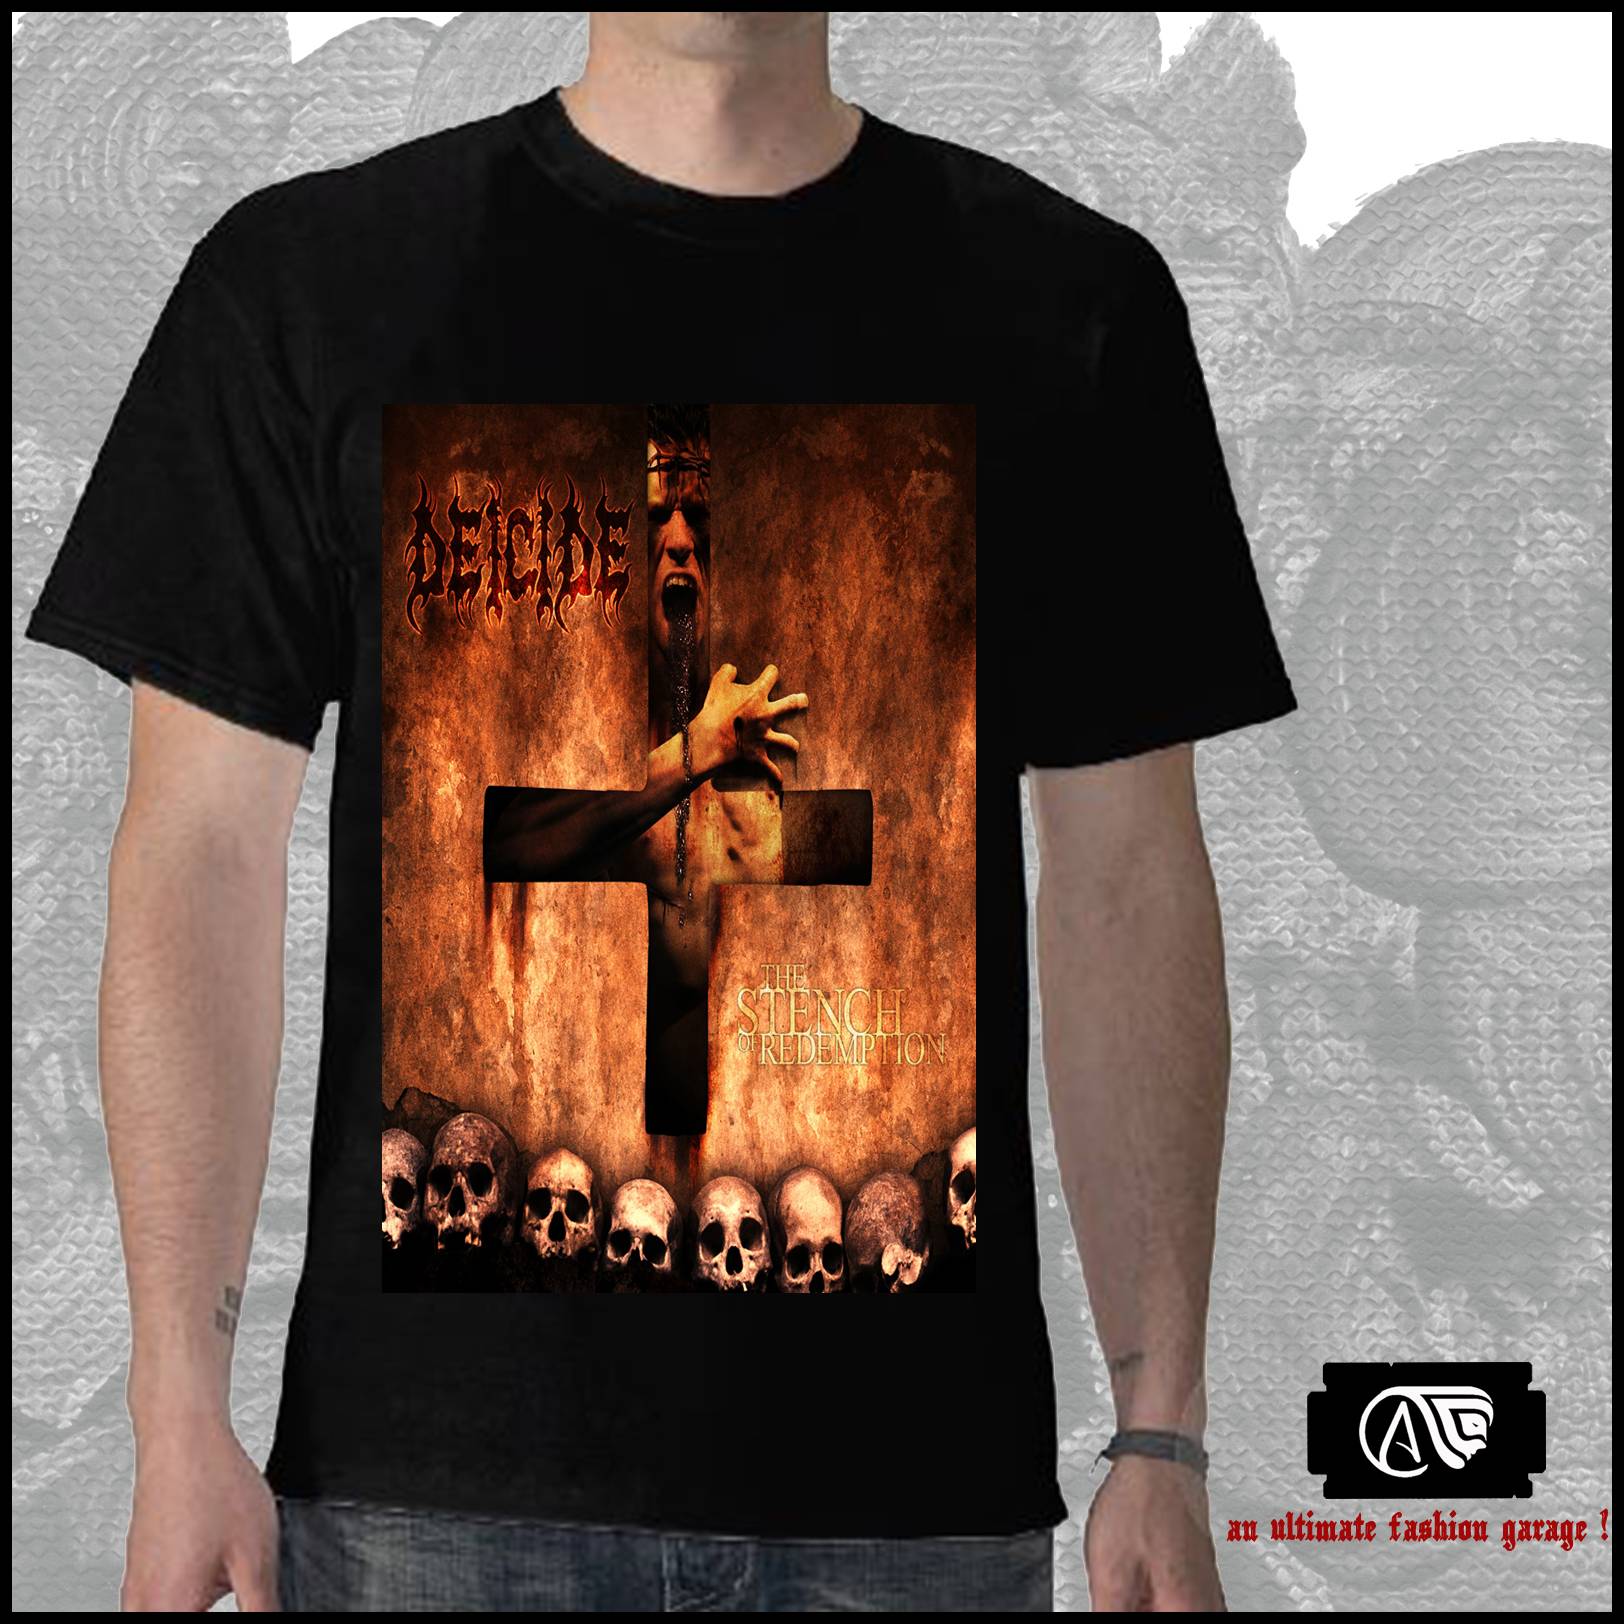 Deicide - Band T-shirt Size - M L XL DXL  large image 0